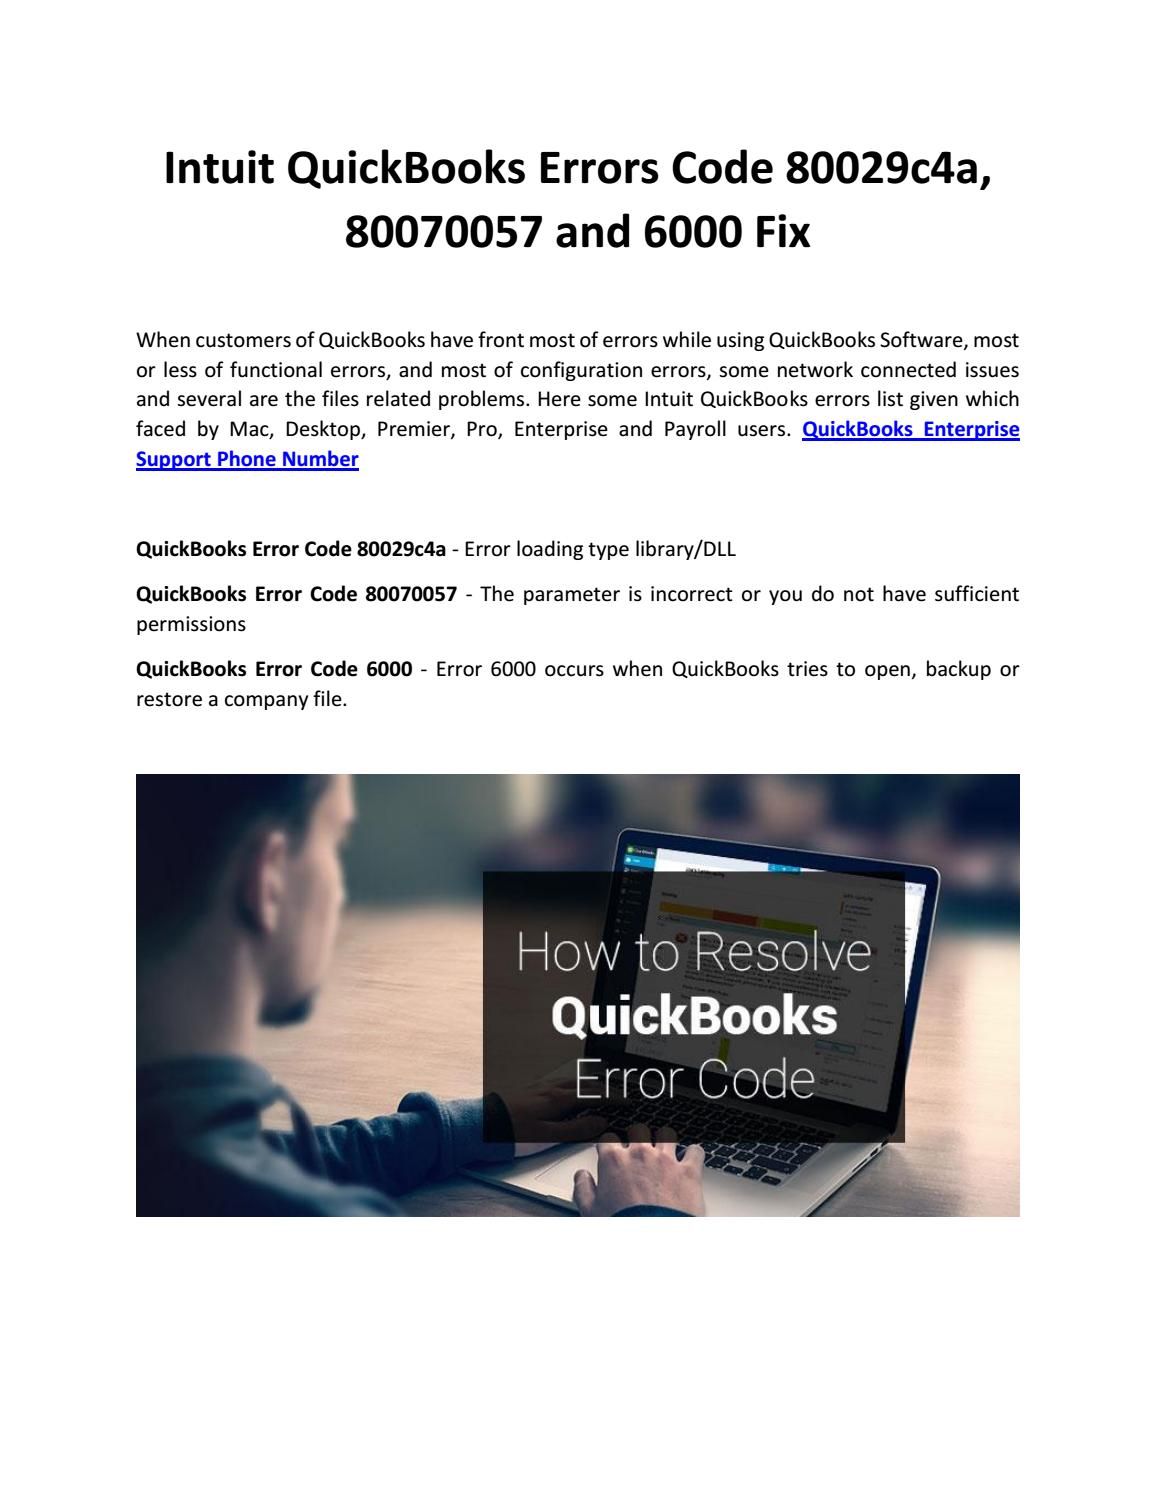 Intuit Quickbooks For Mac Desktop